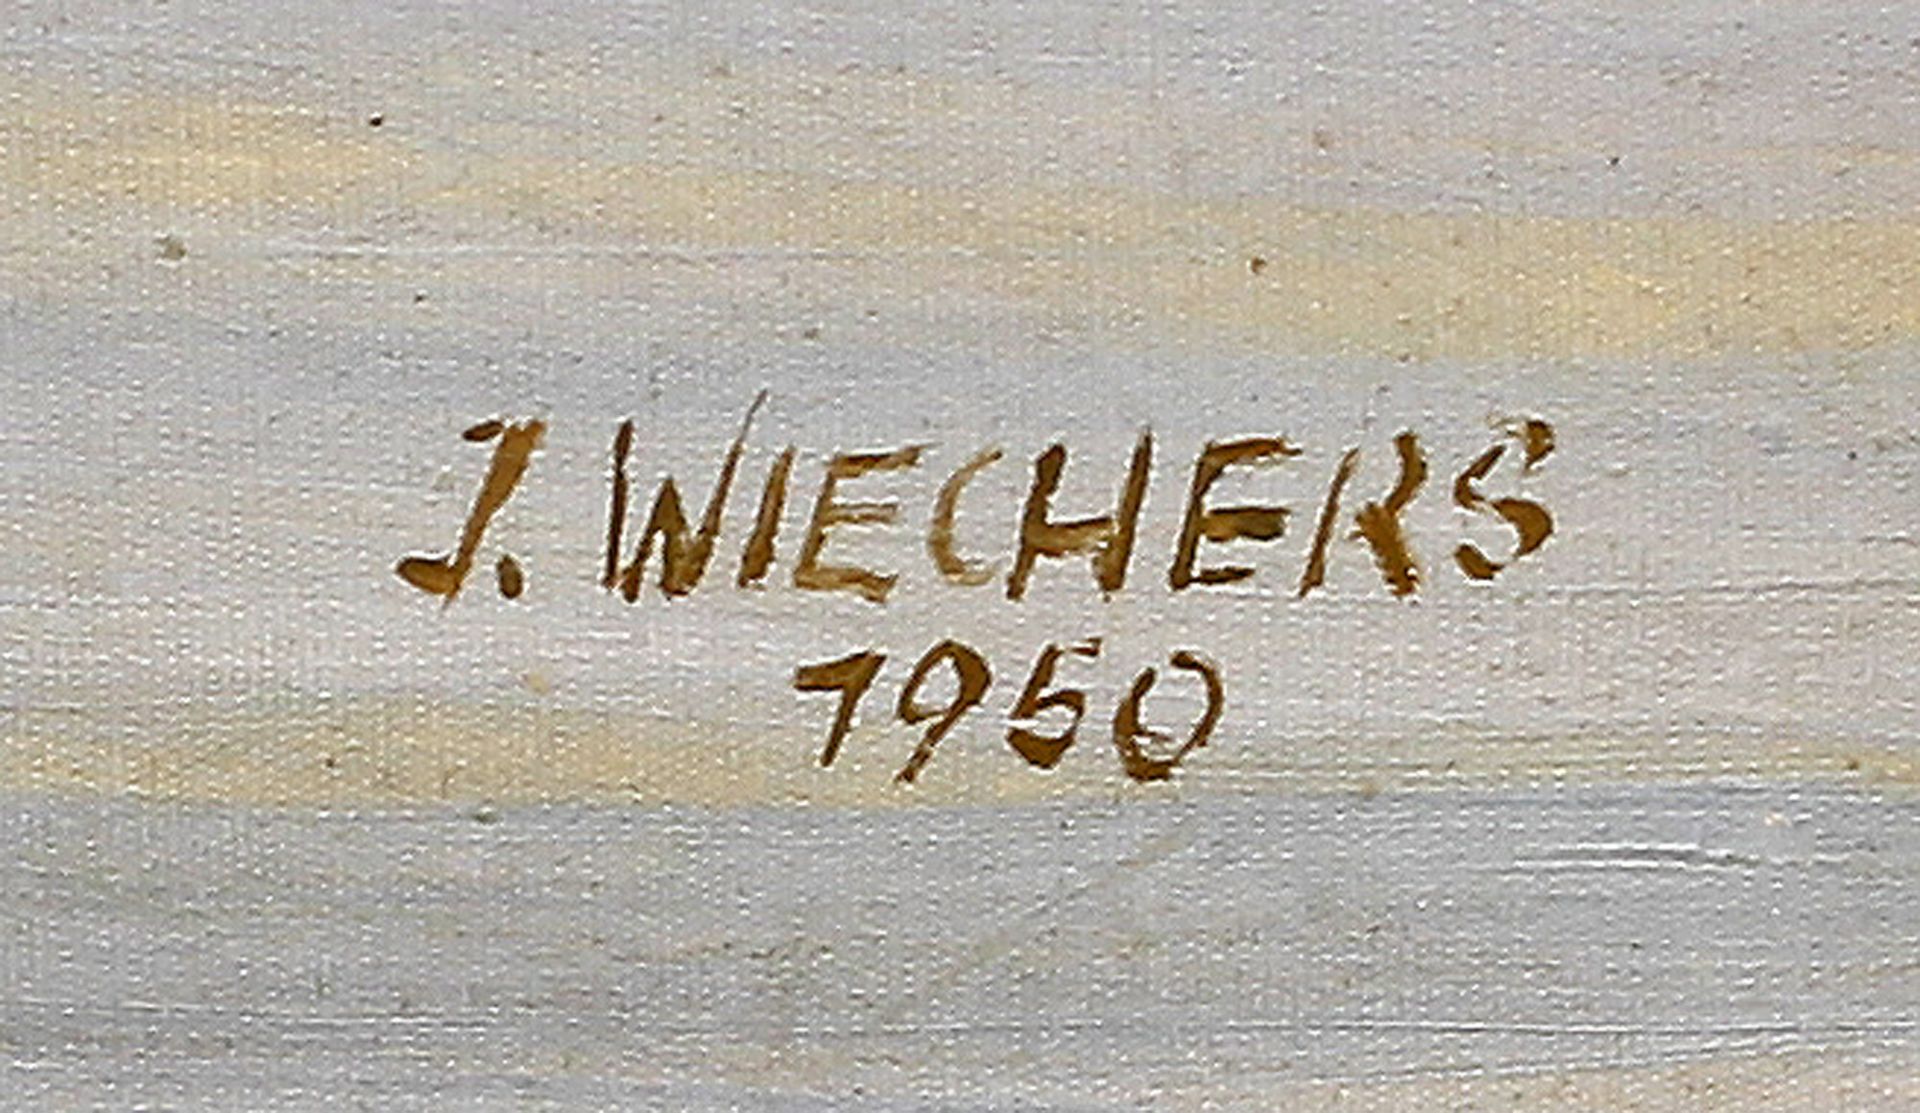 Wiechers, Stadt am Rheinufer - Bild 2 aus 2